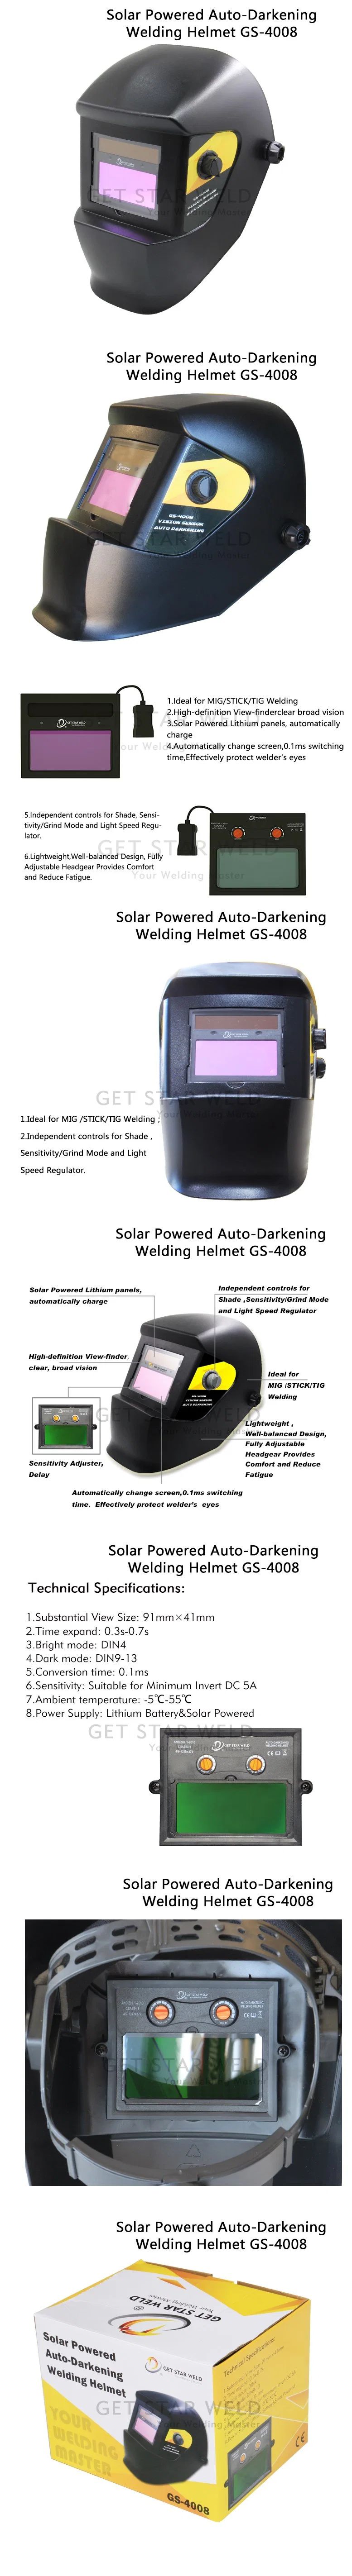 Get Star Weld Large View Solar Powered True Colo Auto Darkening Welding Helmet GS-4008